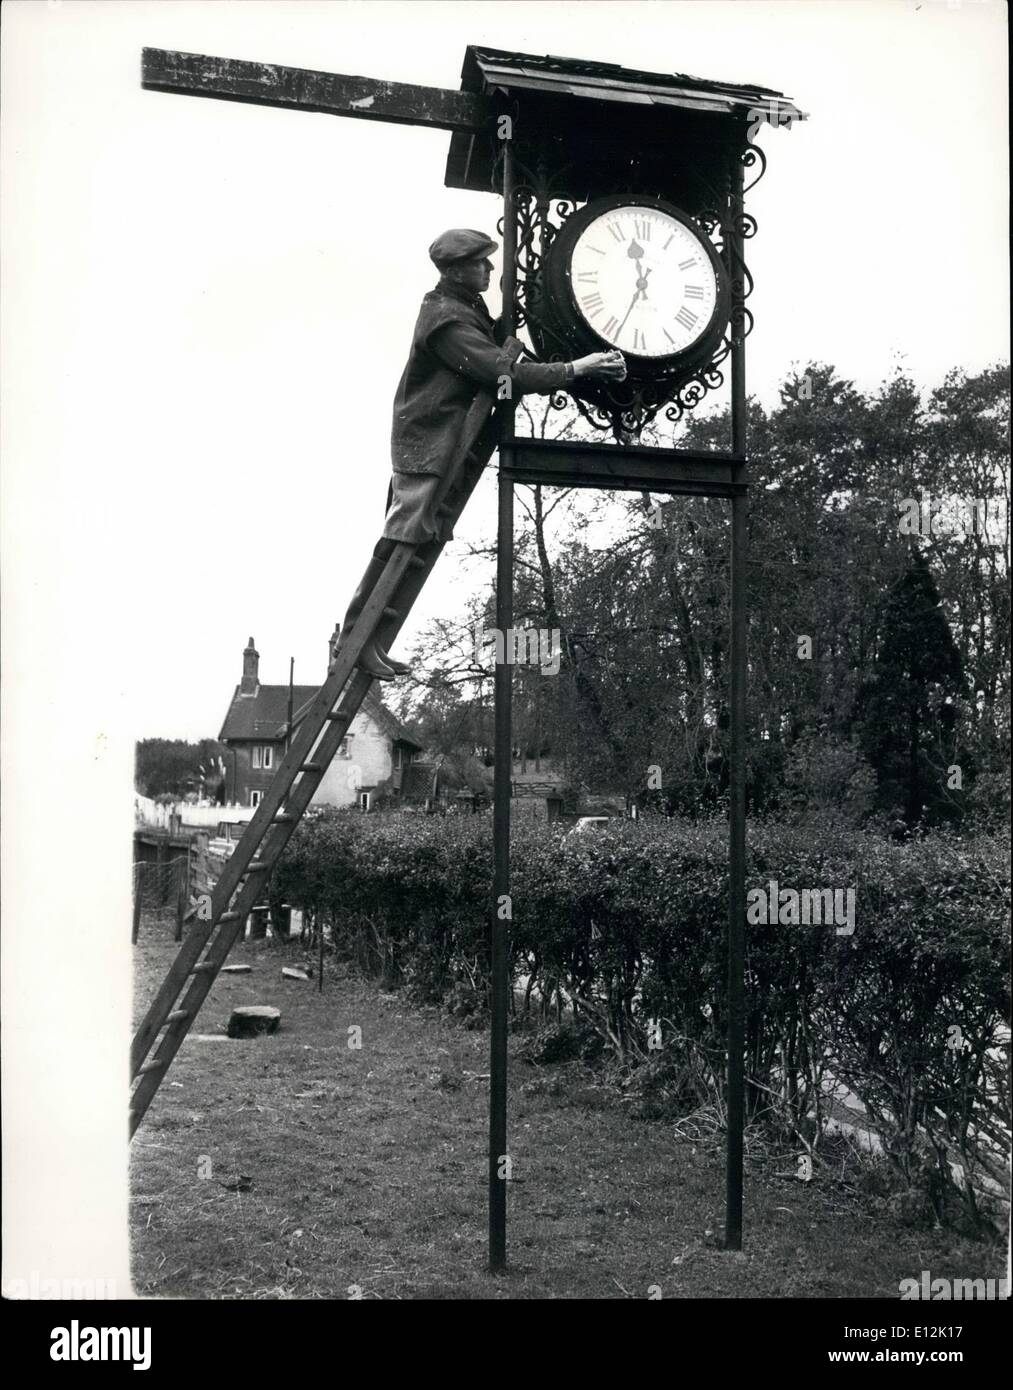 Févr. 24, 2012 - The Vanishing St Pancras Clock. 52 ans Roland Hogan, qui est un rail guard, a trouvé l'horloge qui lui fera roi incontesté de réveil les collectionneurs. Pour qu'il prend peu à peu de sa ferme près de Nottingham, et le remontage de l'horloge de la gare St Pancras. L'immense horloge, l'affronter seule pèse 4 tonnes ; &frac12, sera assemblé à nouveau dans toute sa gloire d'avant-guerre. Les mains coup de peinture or sur le côté de Roland's barn. Chaque jour un autre morceau du siècle disparaît de la vieille horloge sur l'heure du déjeuner jusqu'à la gare de Nottingham de St Banque D'Images